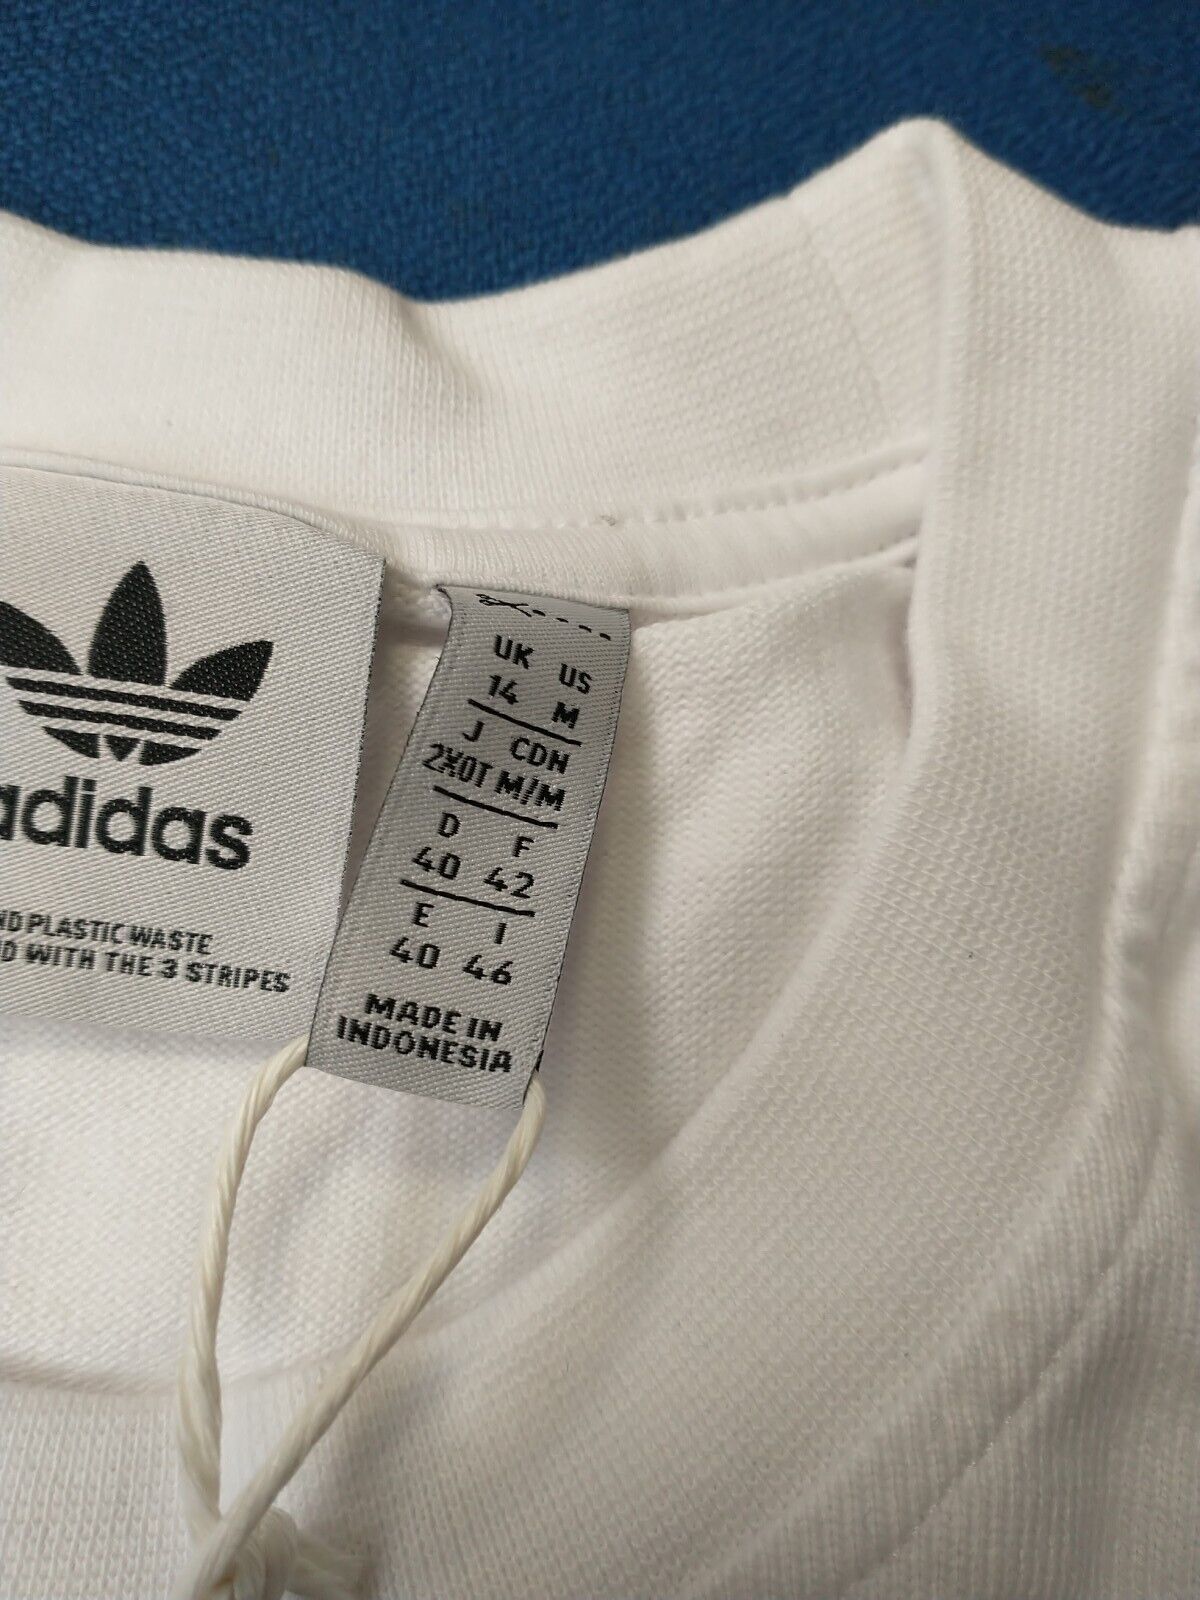 Adidas Ladies Oversized Sweatshirt White Size 14 BNWT ****V11